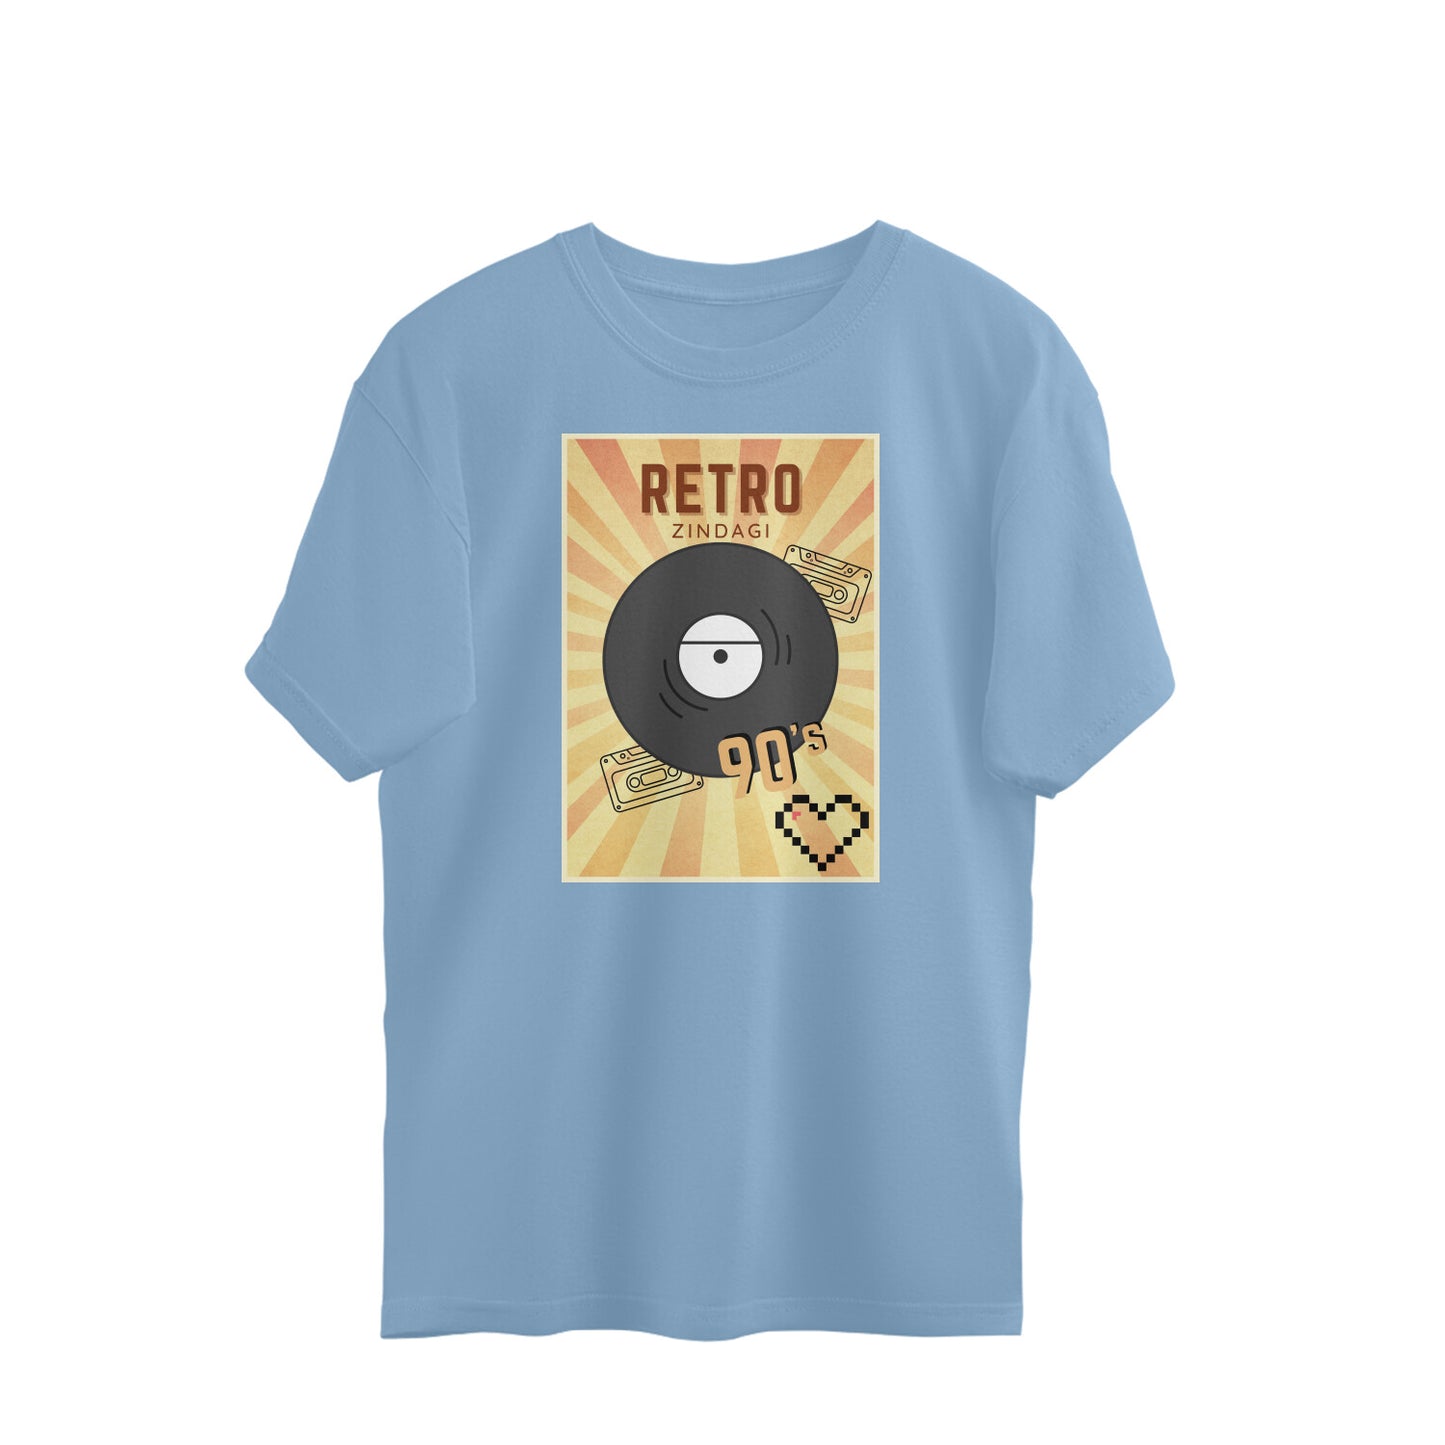 Bilkool Retro Zindagi 90's Oversized T-Shirts